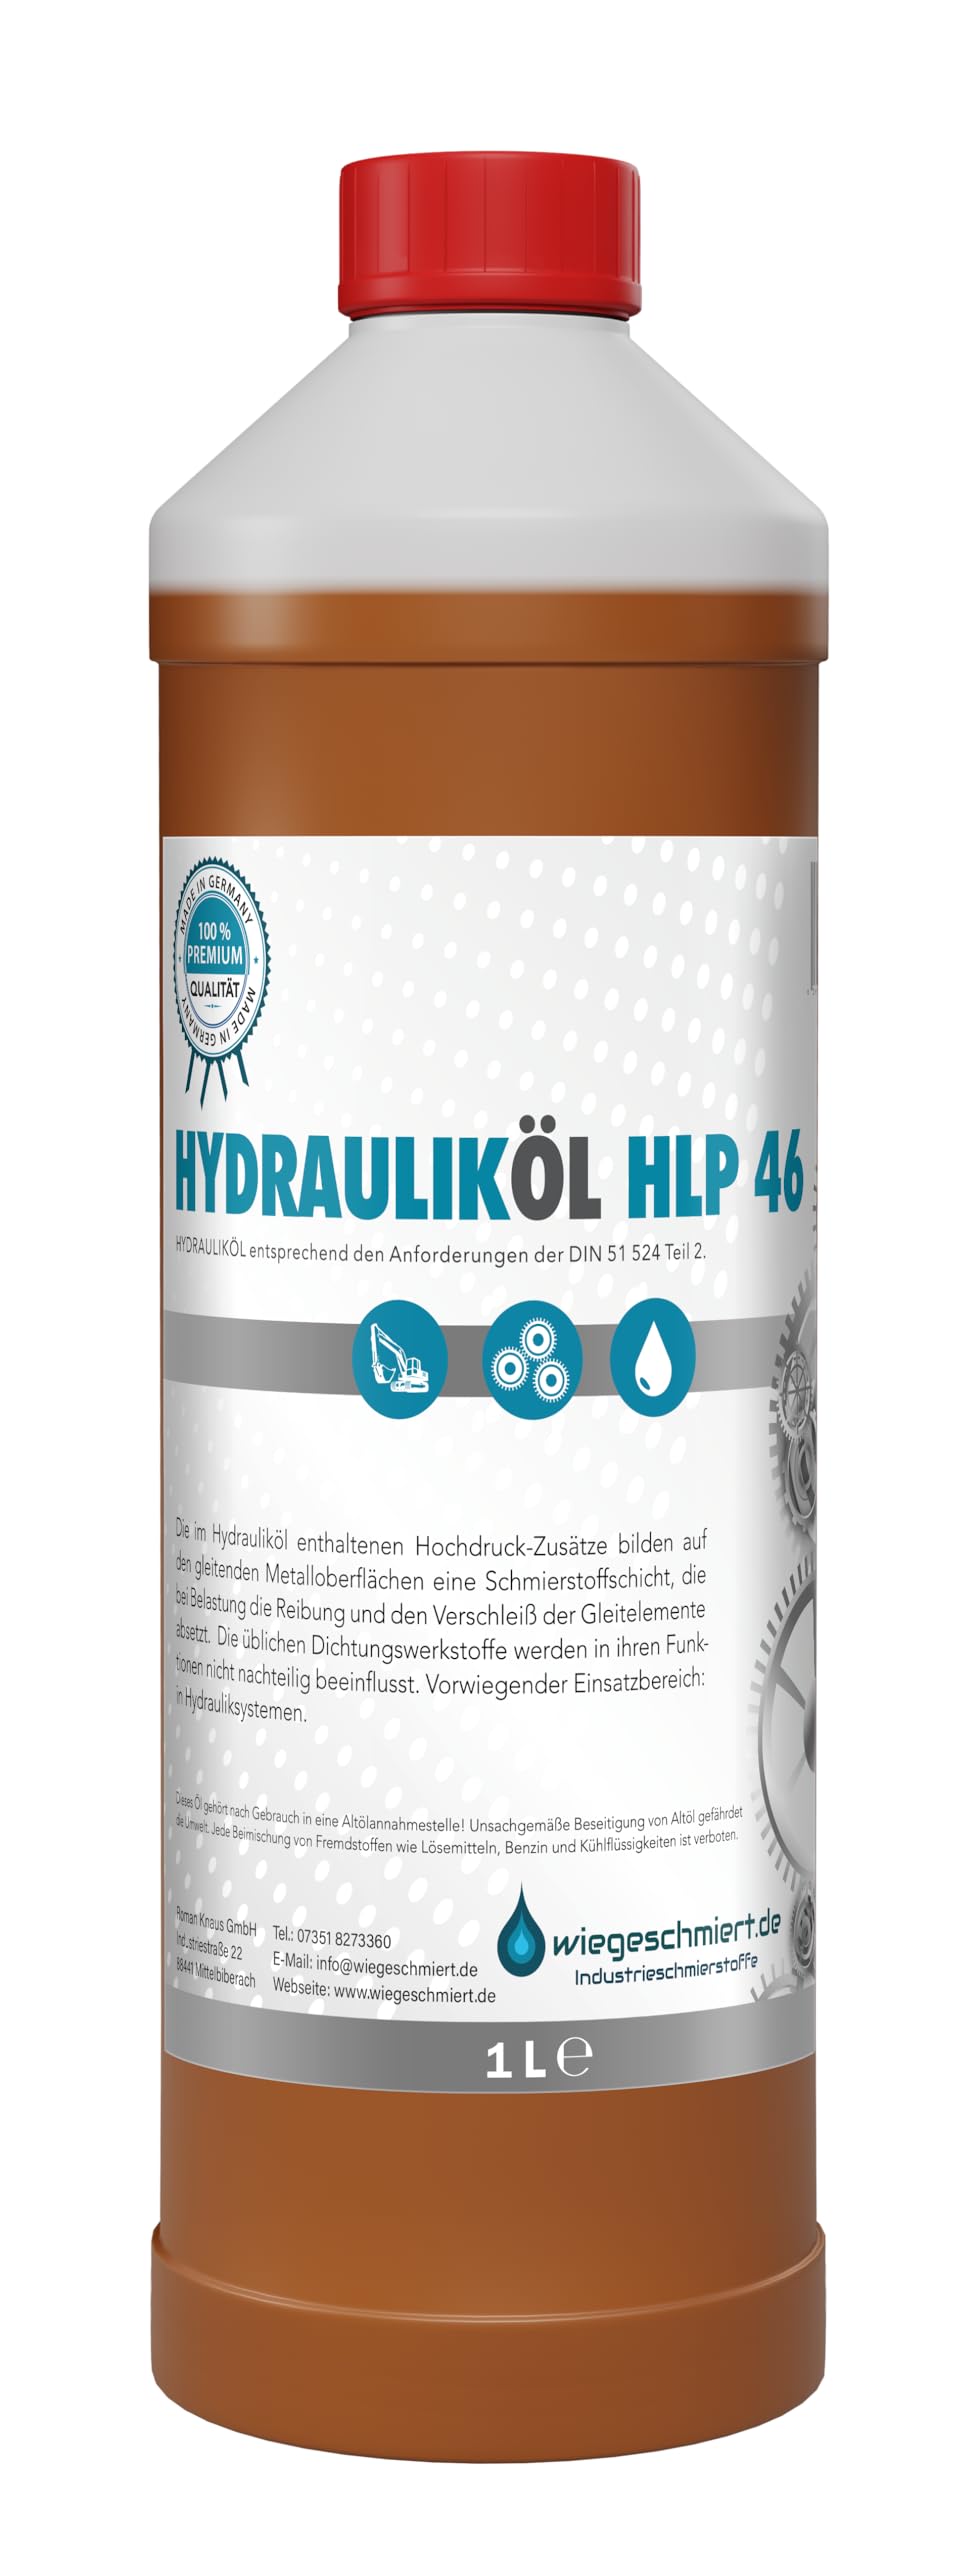 Hydrauliköl HLP 46 ISO VG 46 nach DIN 51524 Teil 2 … (1 Liter) von KONGZEE